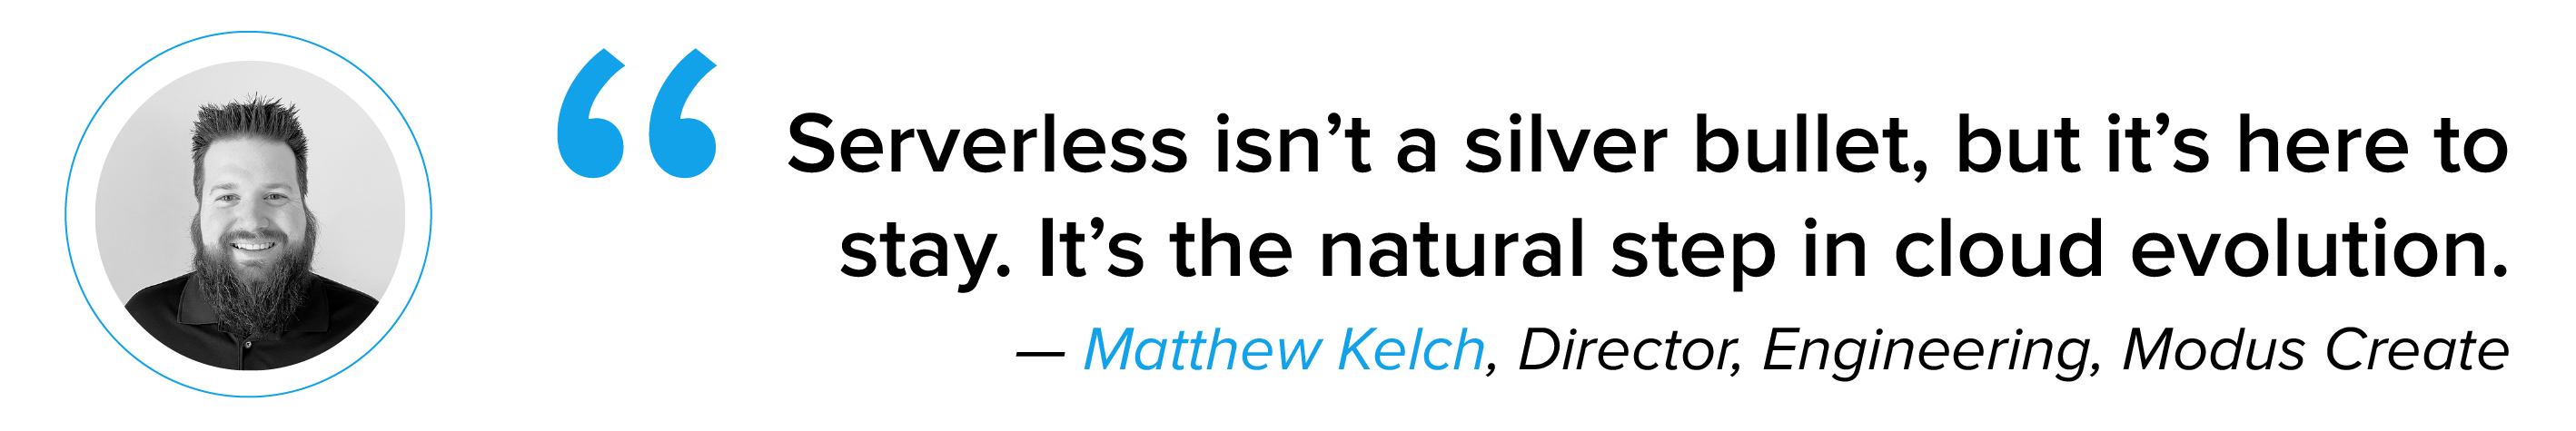 Matthew Kelch quote